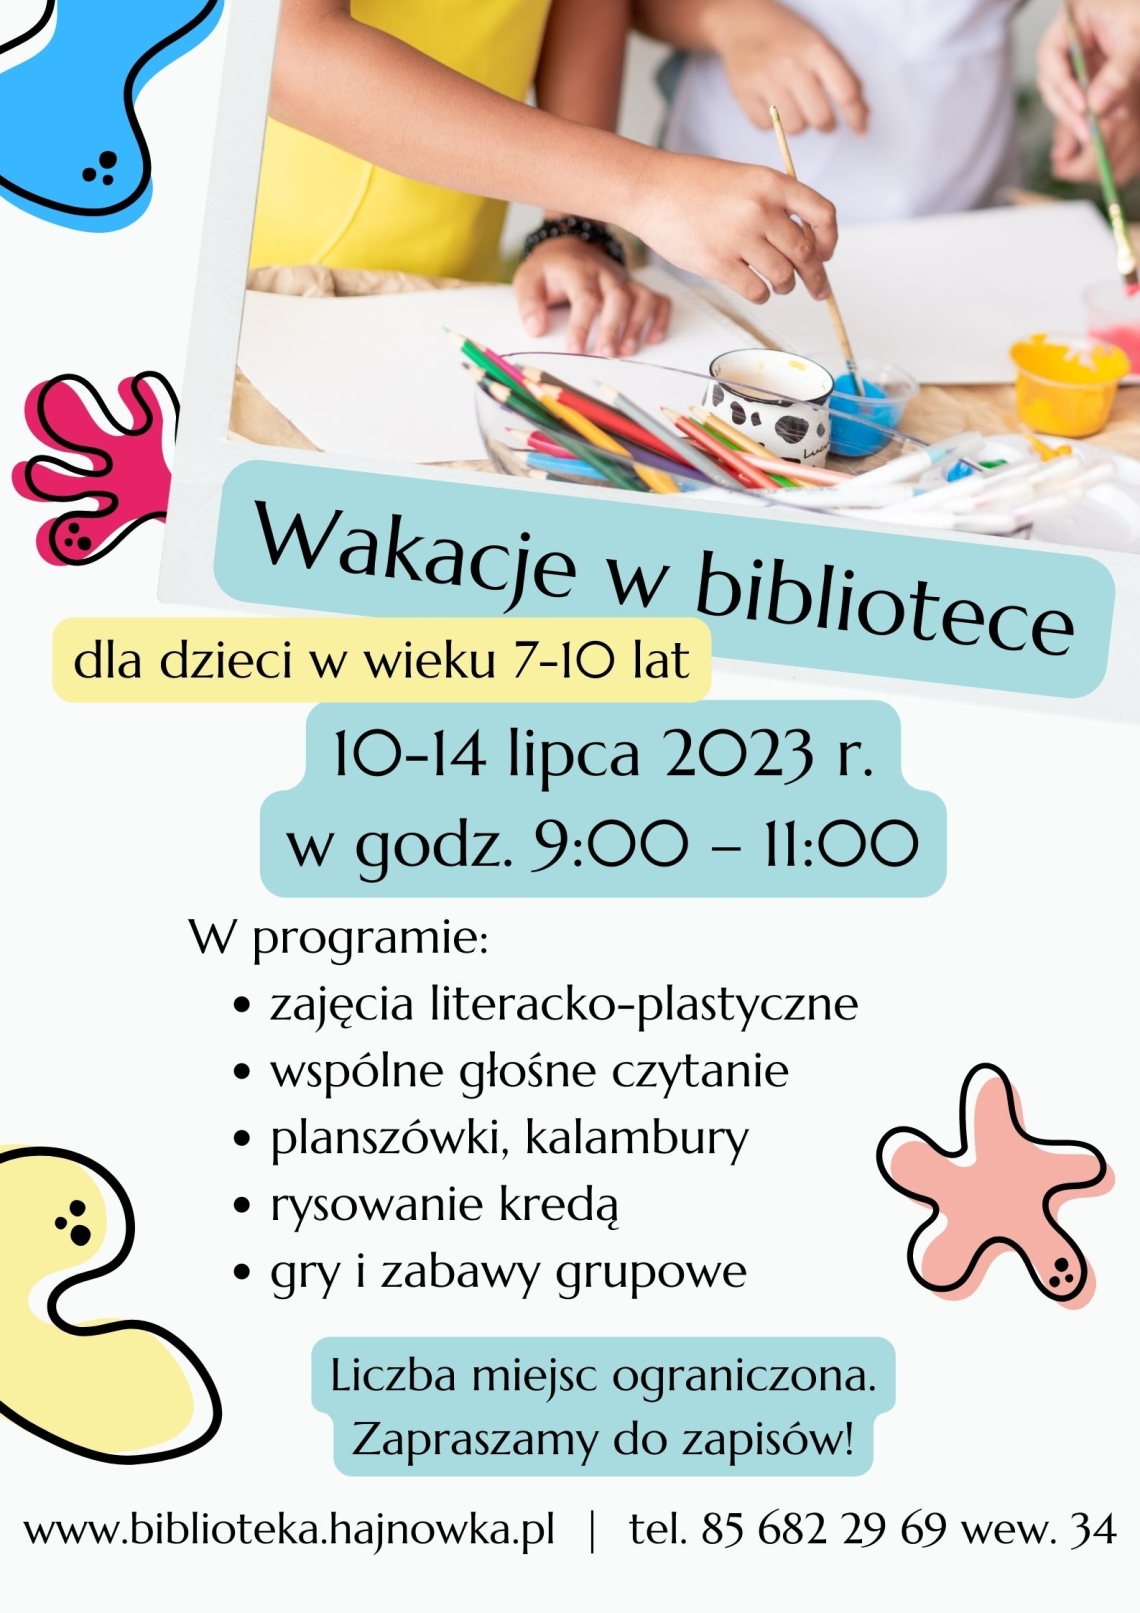 kolorowy plakat z informacjami o ofercie biblioteki na wakacje, u góry grafika przestawiające ręce dzieci podczas prac plastycznych